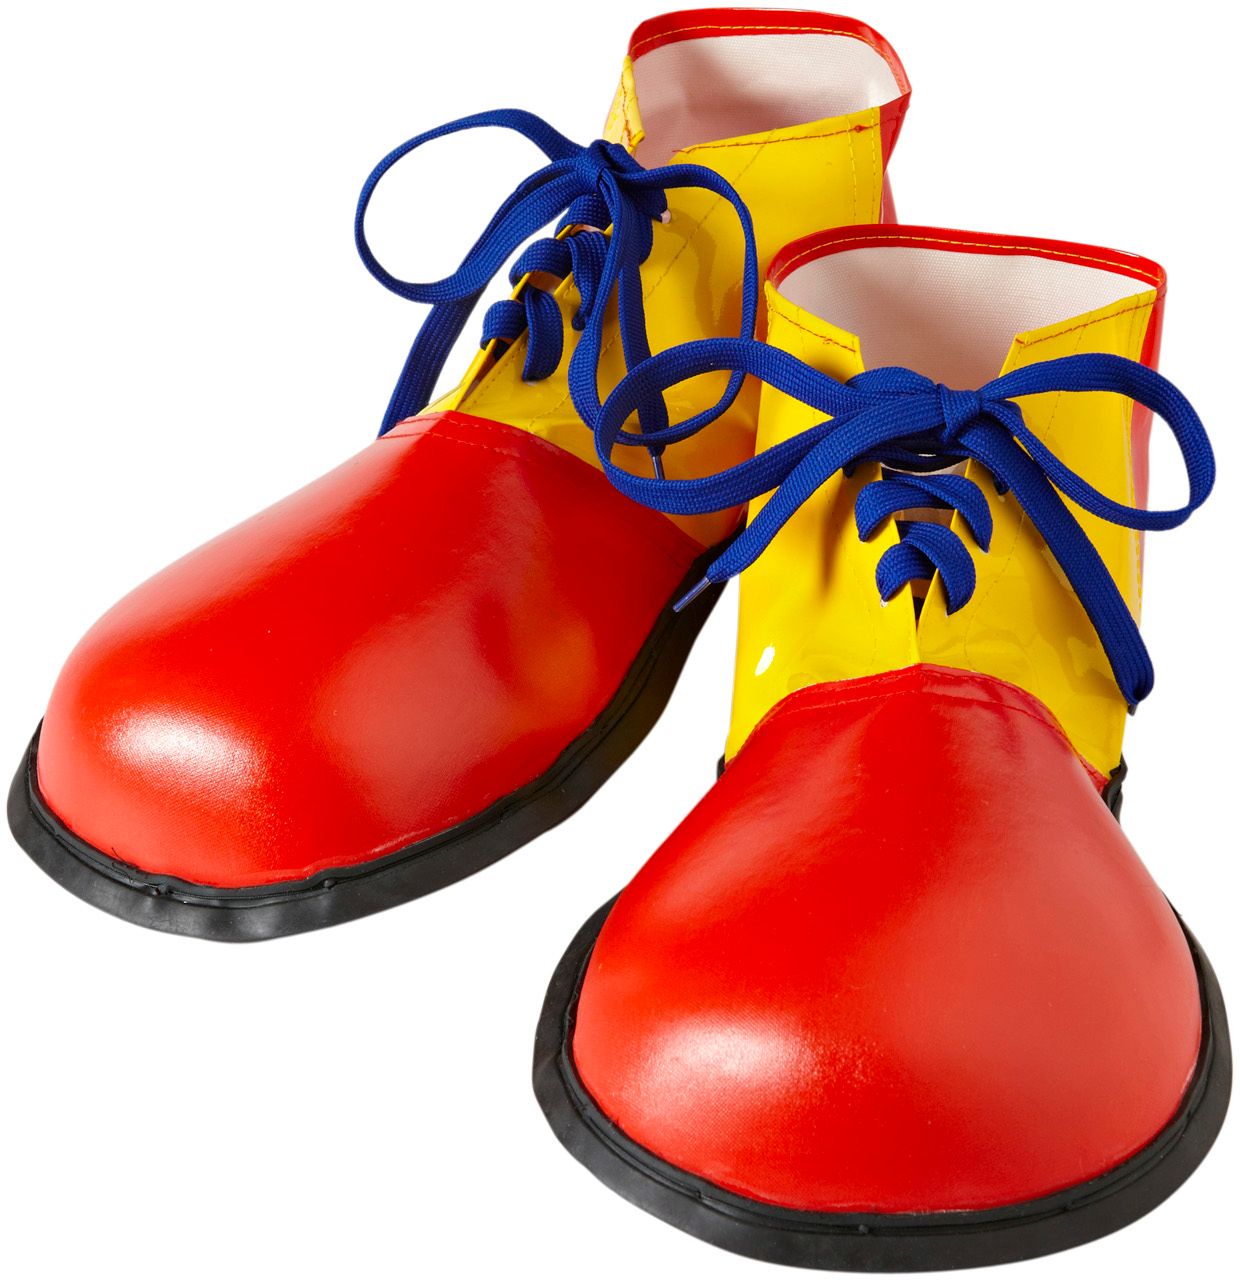 Clown schoenen rood geel